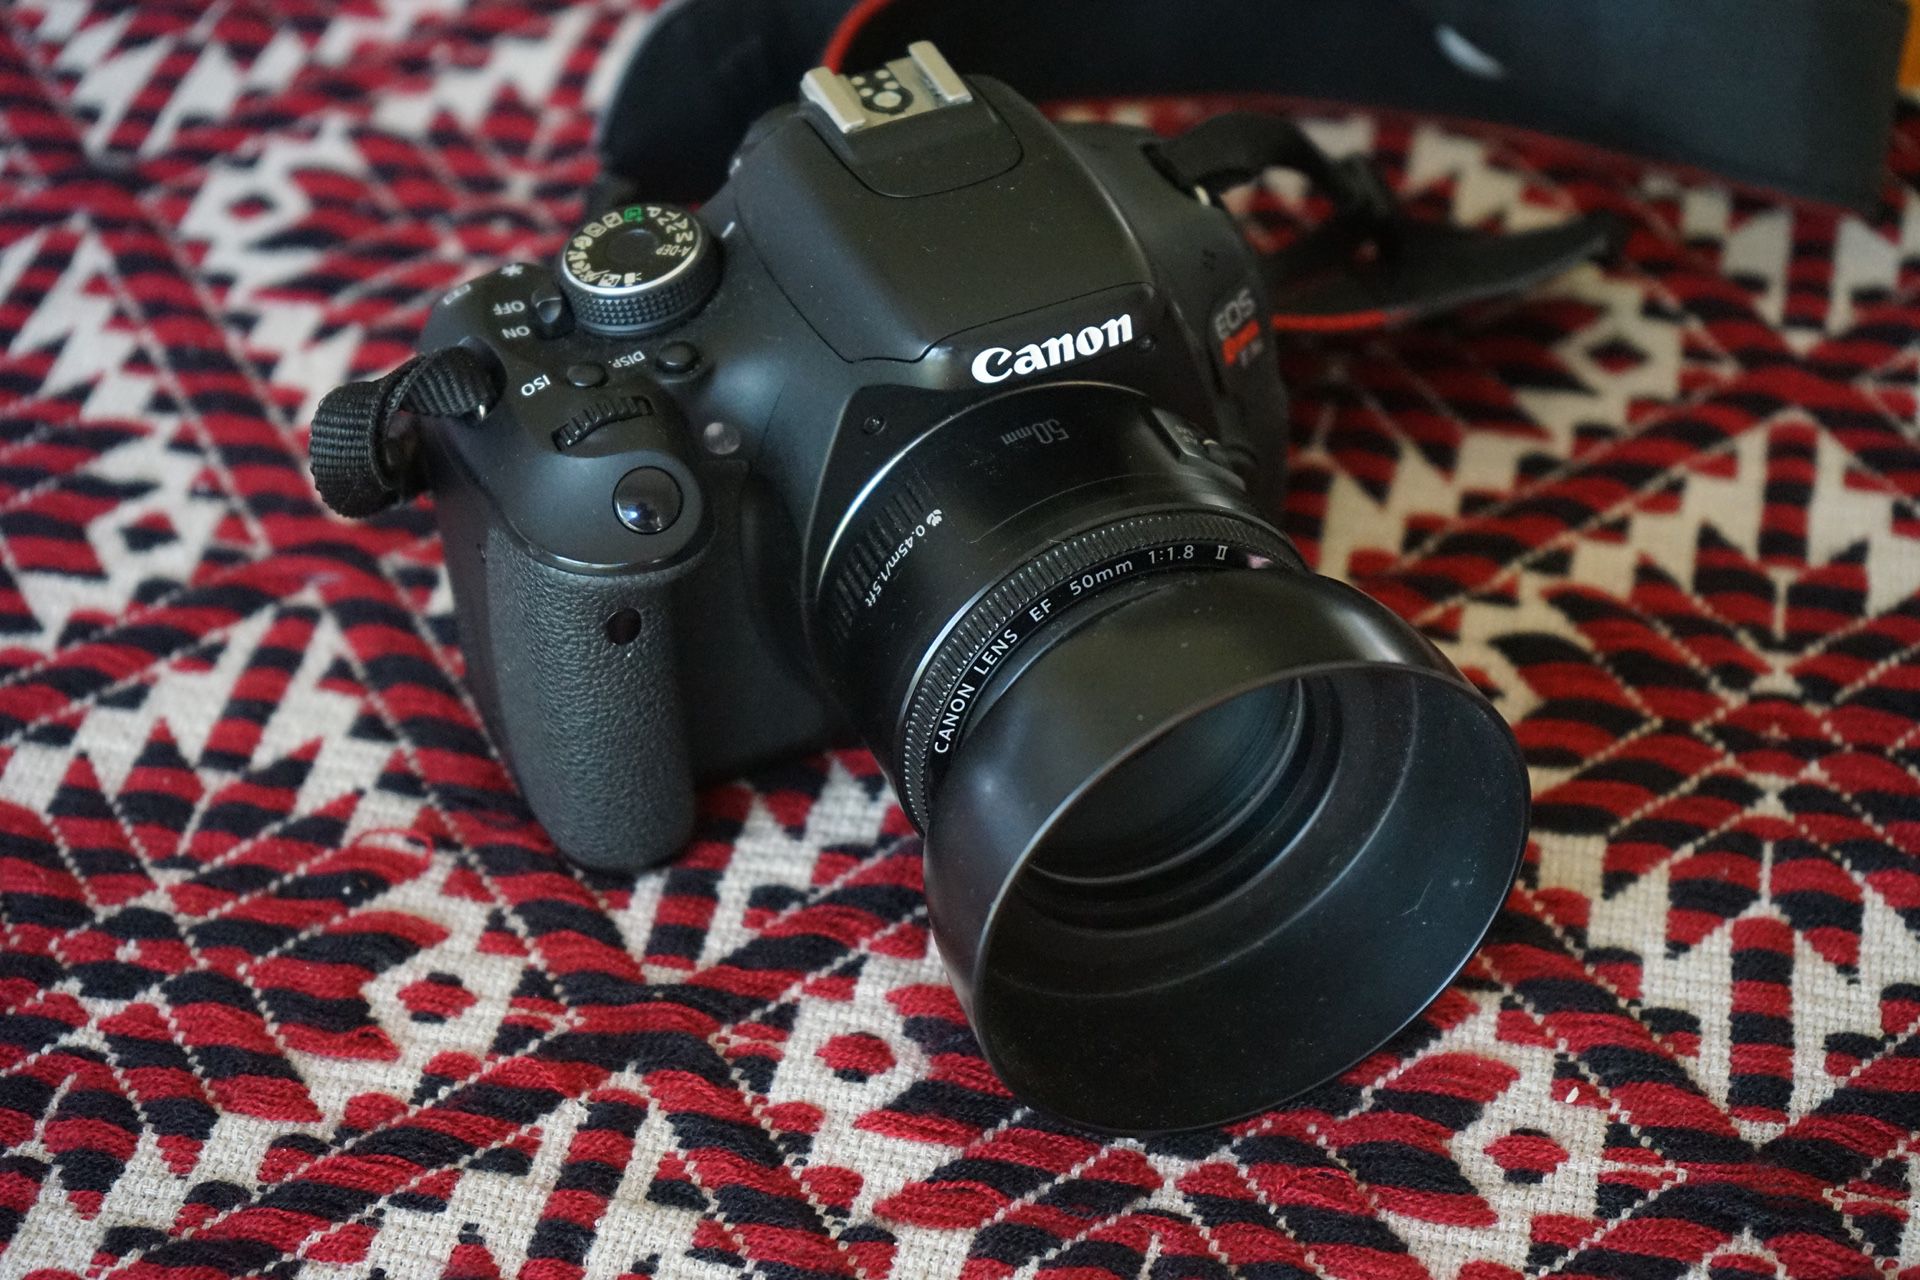 Canon EOS Rebel T3i Digital SLR Camera with EF 50mm f/1.8 STM Lens